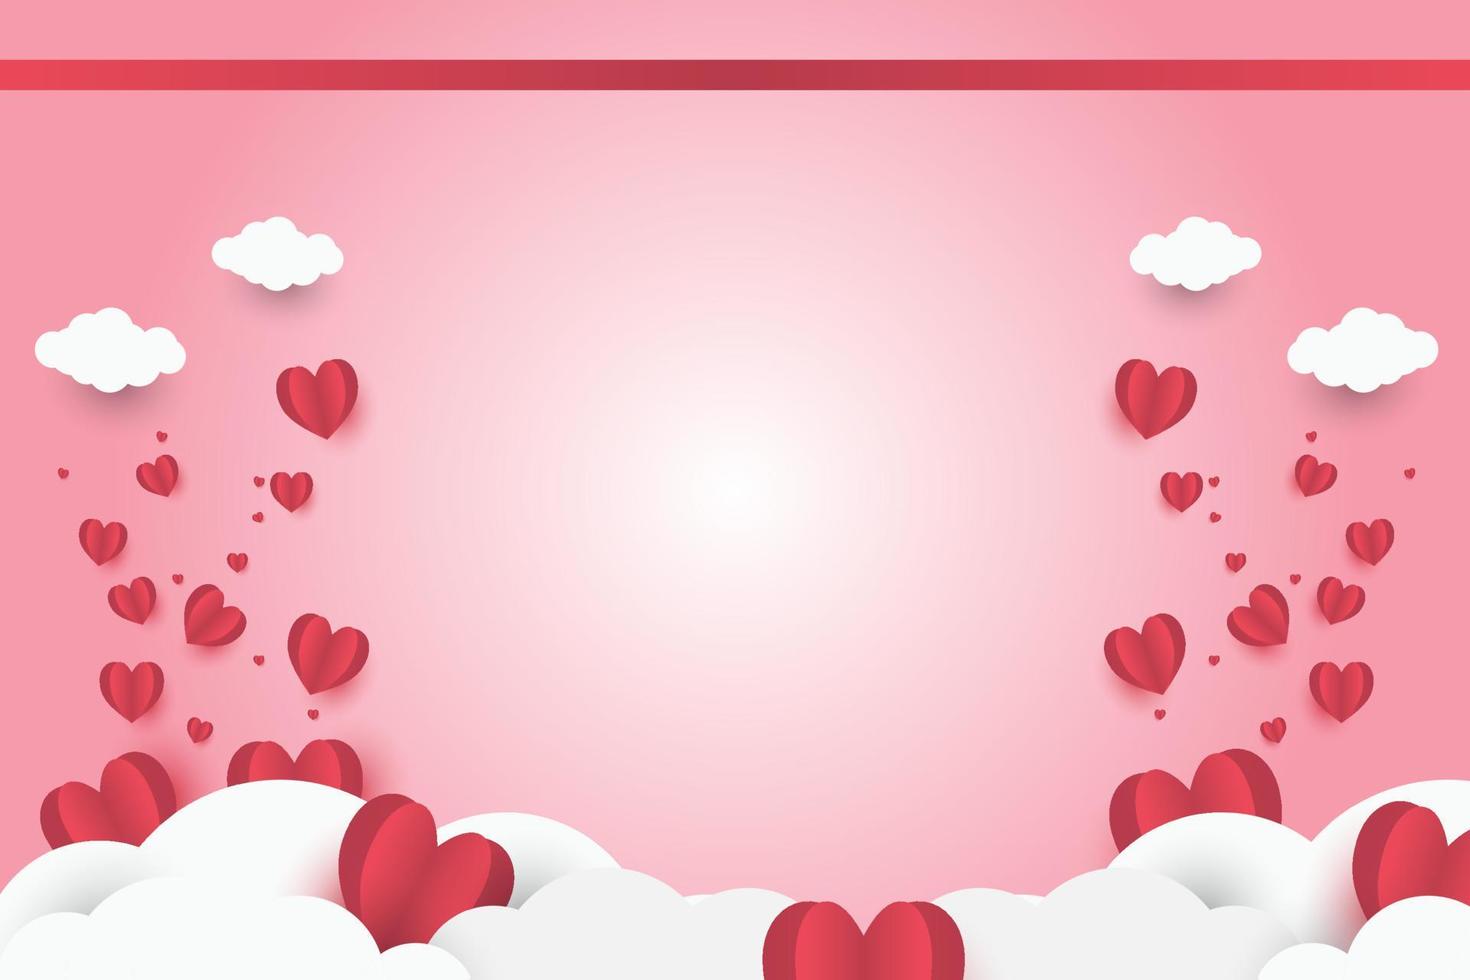 röd hjärta på rosa papper abstrakt bakgrund med himmel och linje design för valentines dag festival, mödrar dag, affisch hjärta, banderoller, gåva kort. vektor illustration. papper konst stil.